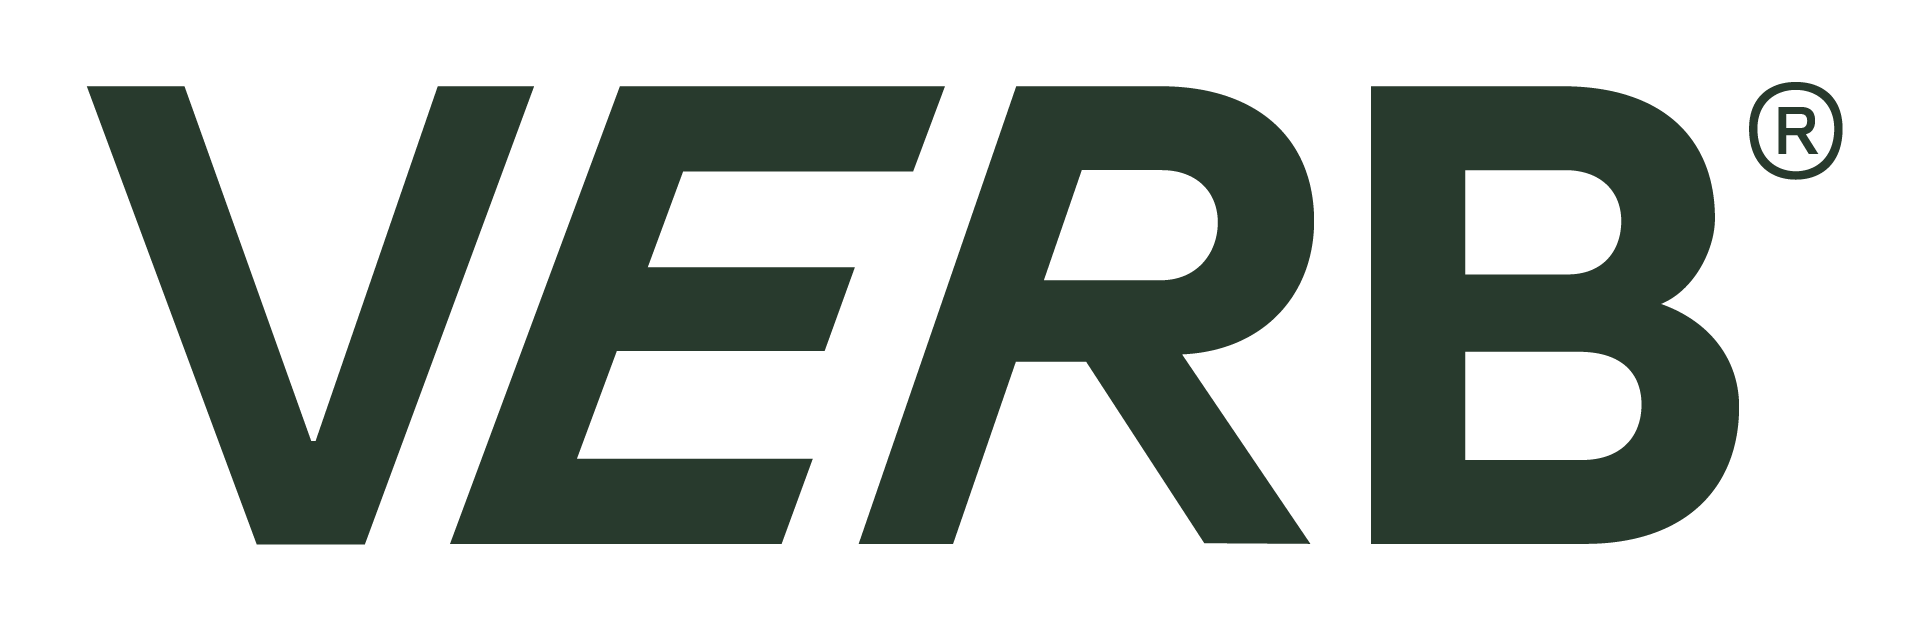 Verb_Logo_(R)_Green (1)